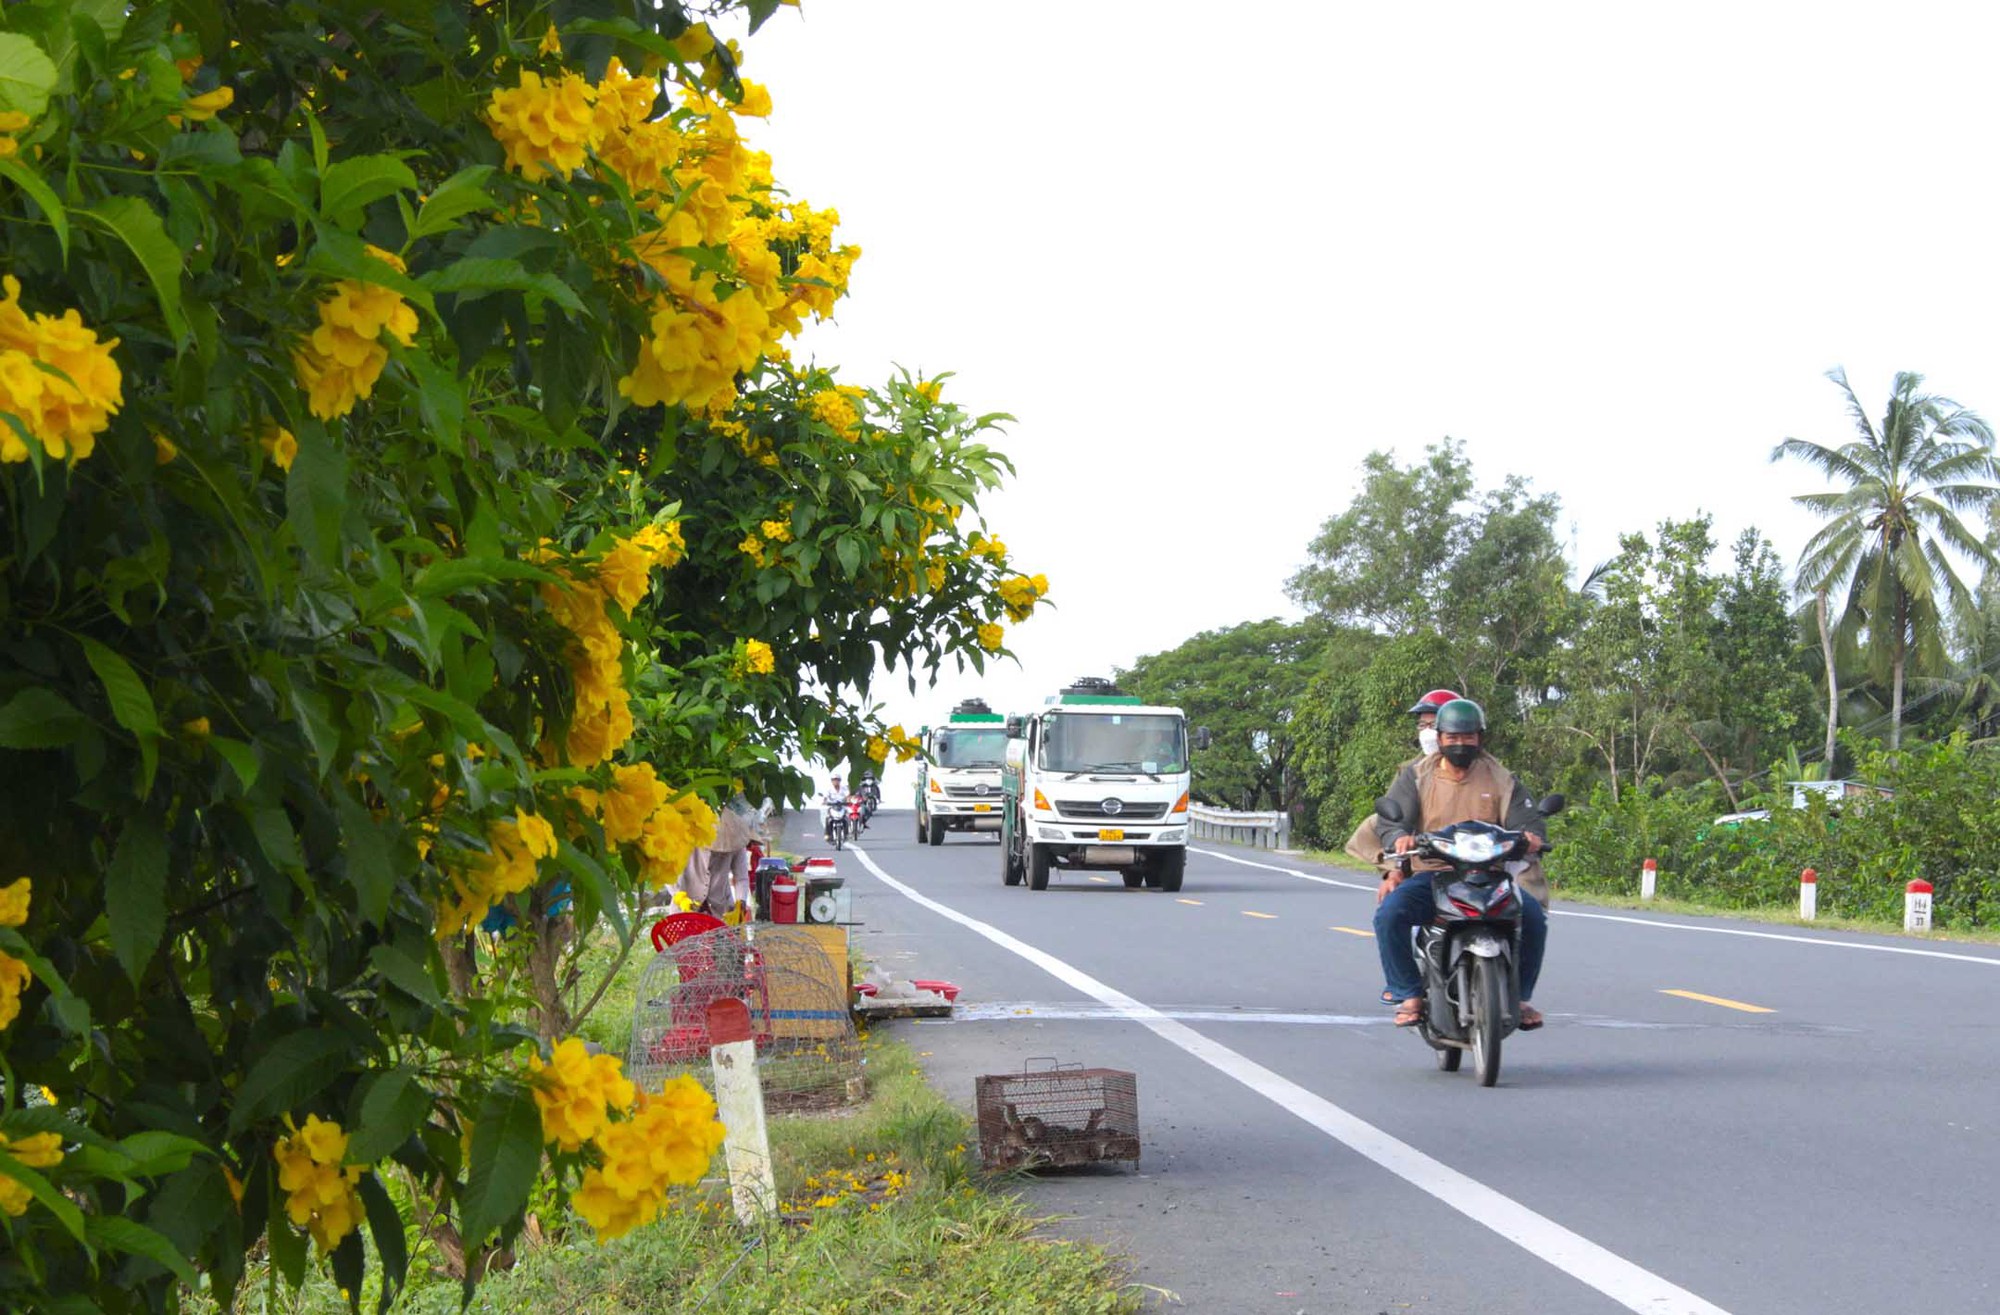 Tuyến đường hoa nông thôn mới trồng hoàng yến ở Hậu Giang, chụp ảnh, quay phim qua gương ô tô, xe máy đẹp như phim - Ảnh 2.